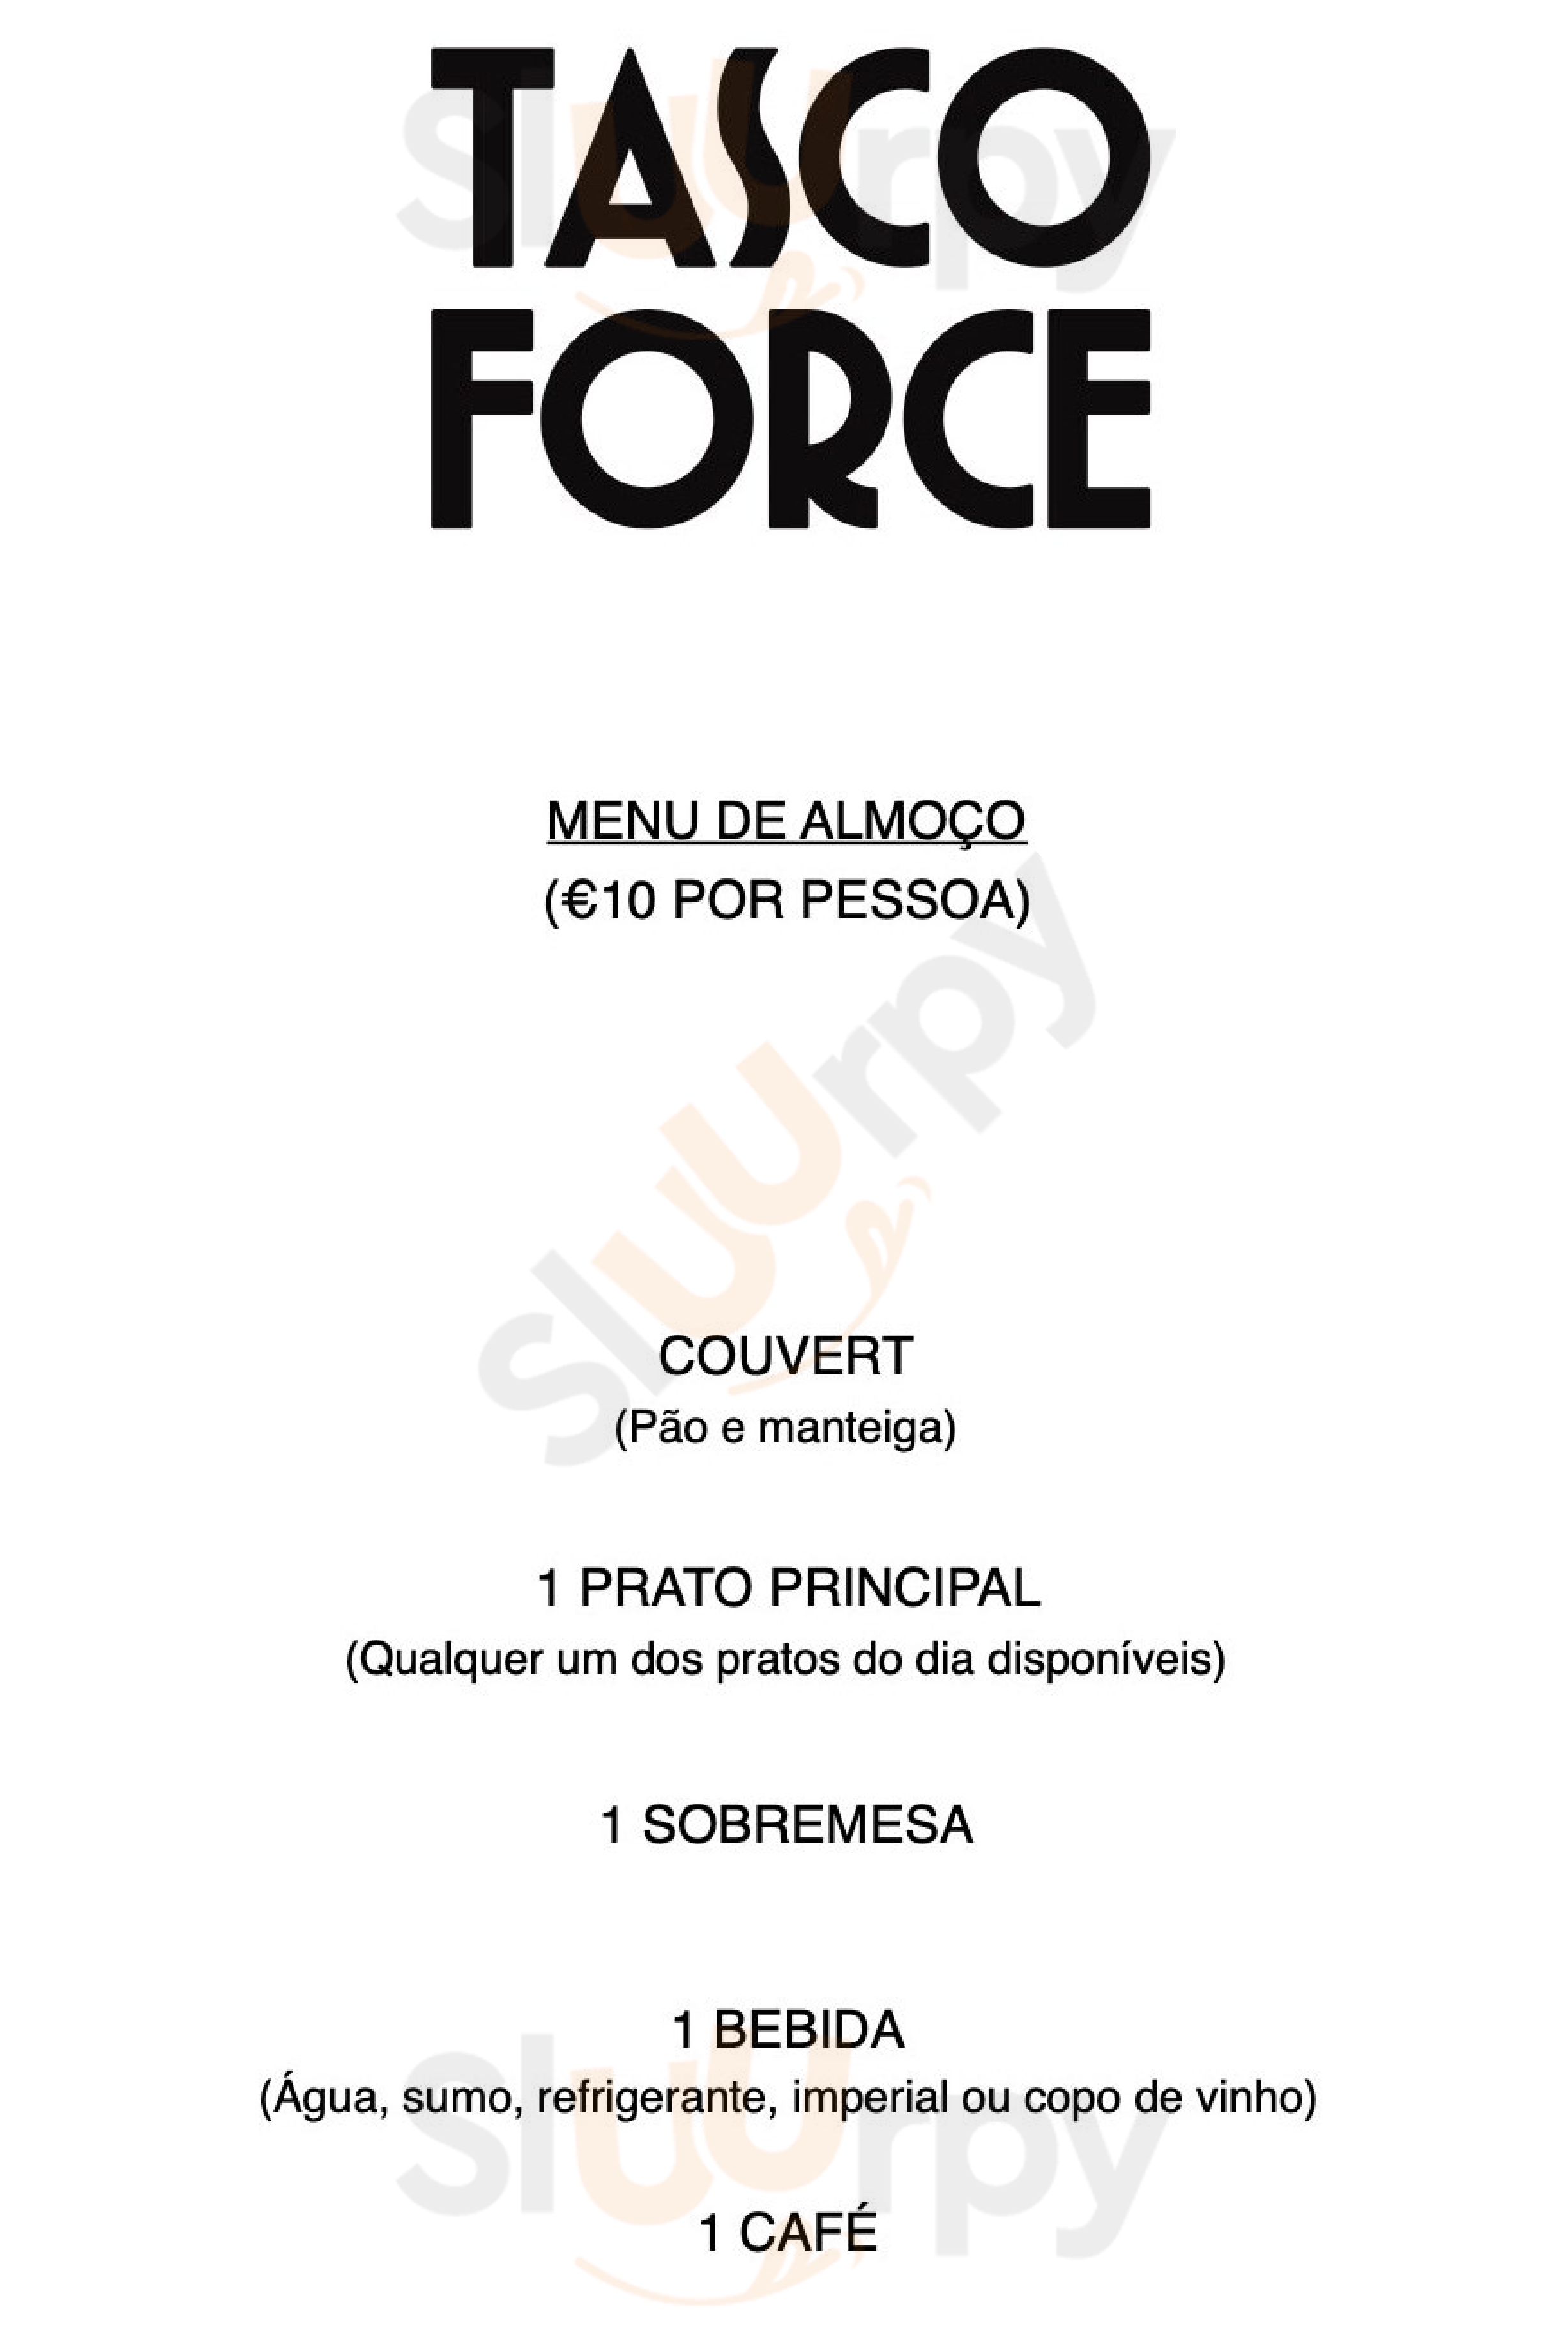 Tasco Force Lisboa Menu - 1